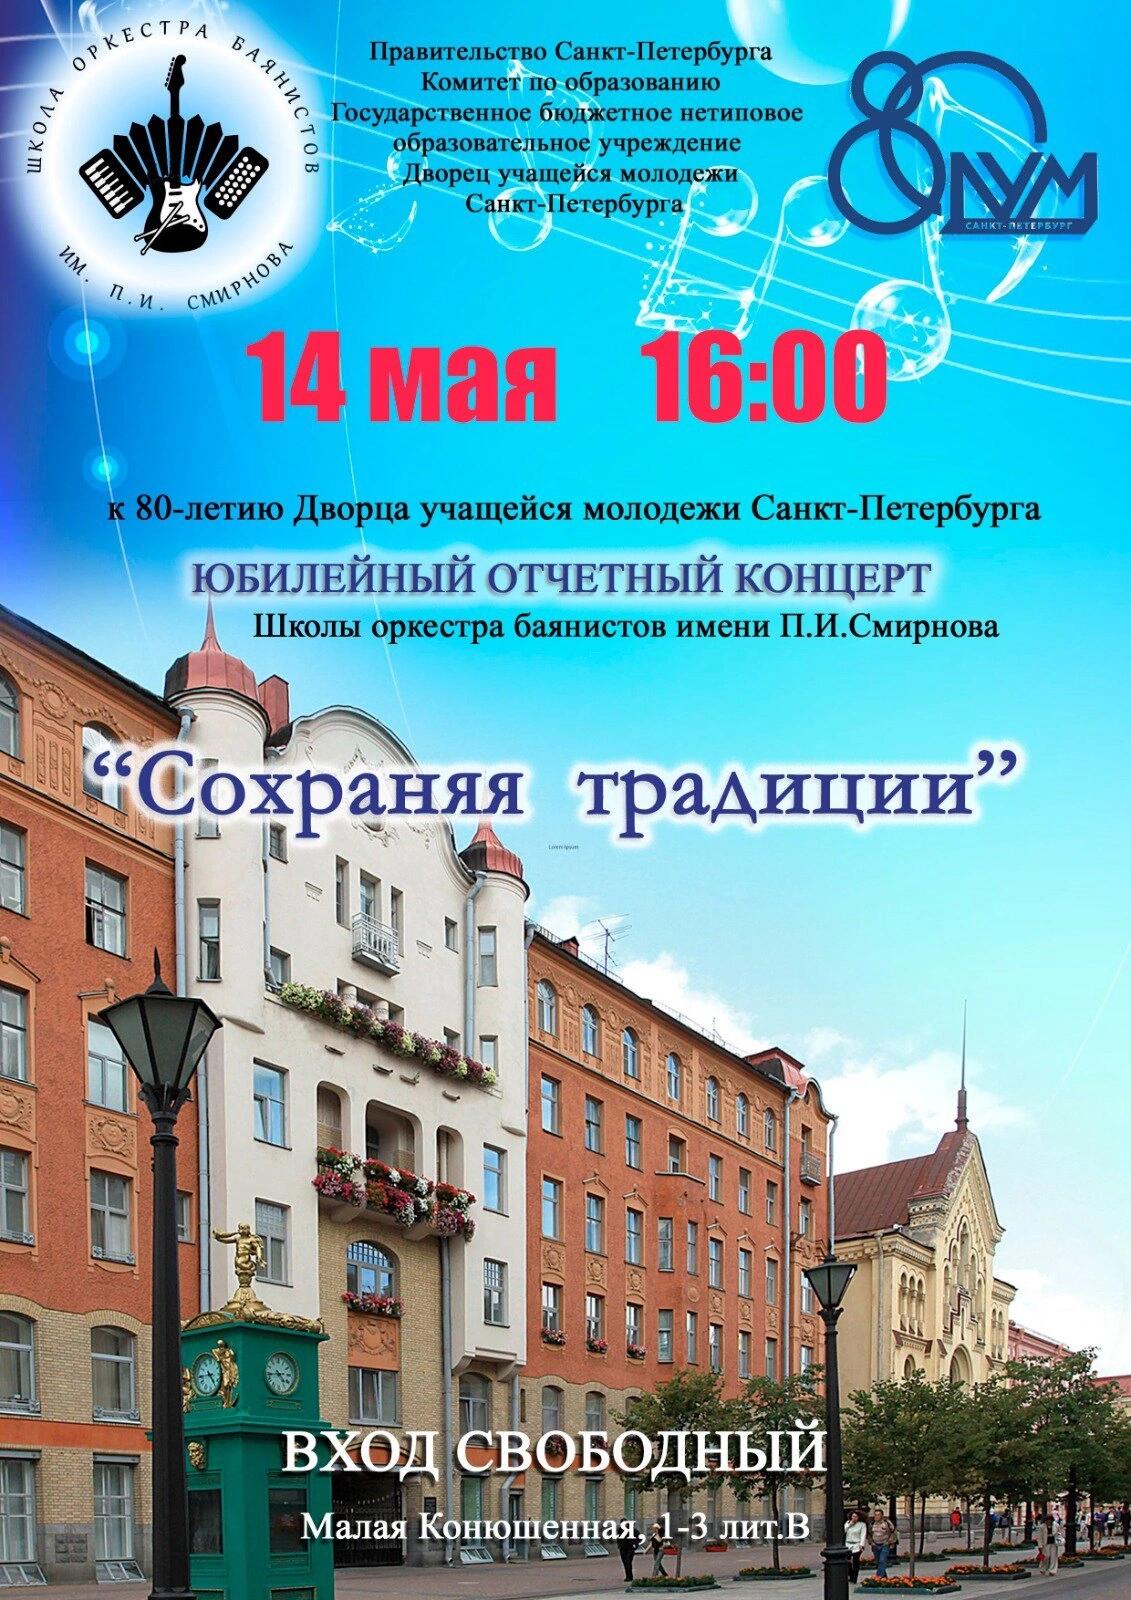 Отчётный концерт Школы Оркестра имени П.И. Смирнова, посвященный 10-летию Школы.